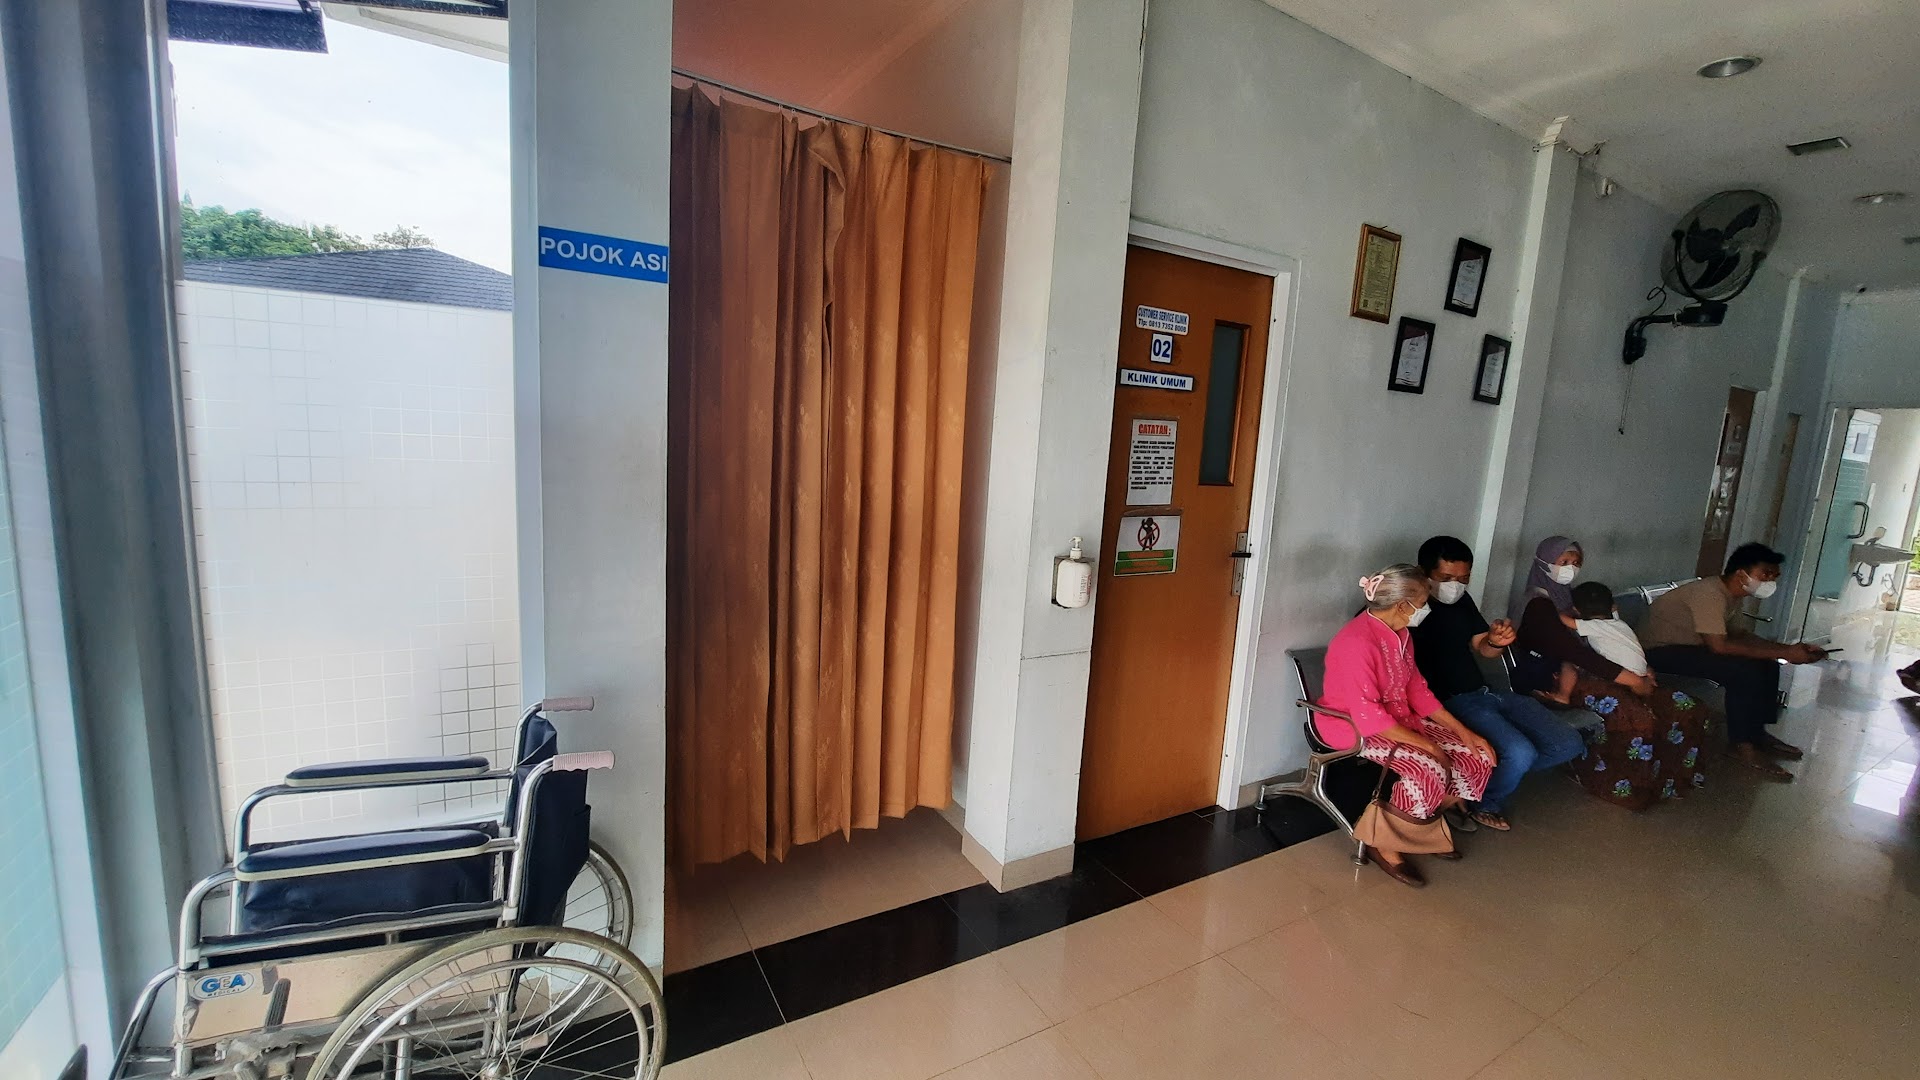 Klinik Pratama Bukit Asam Photo